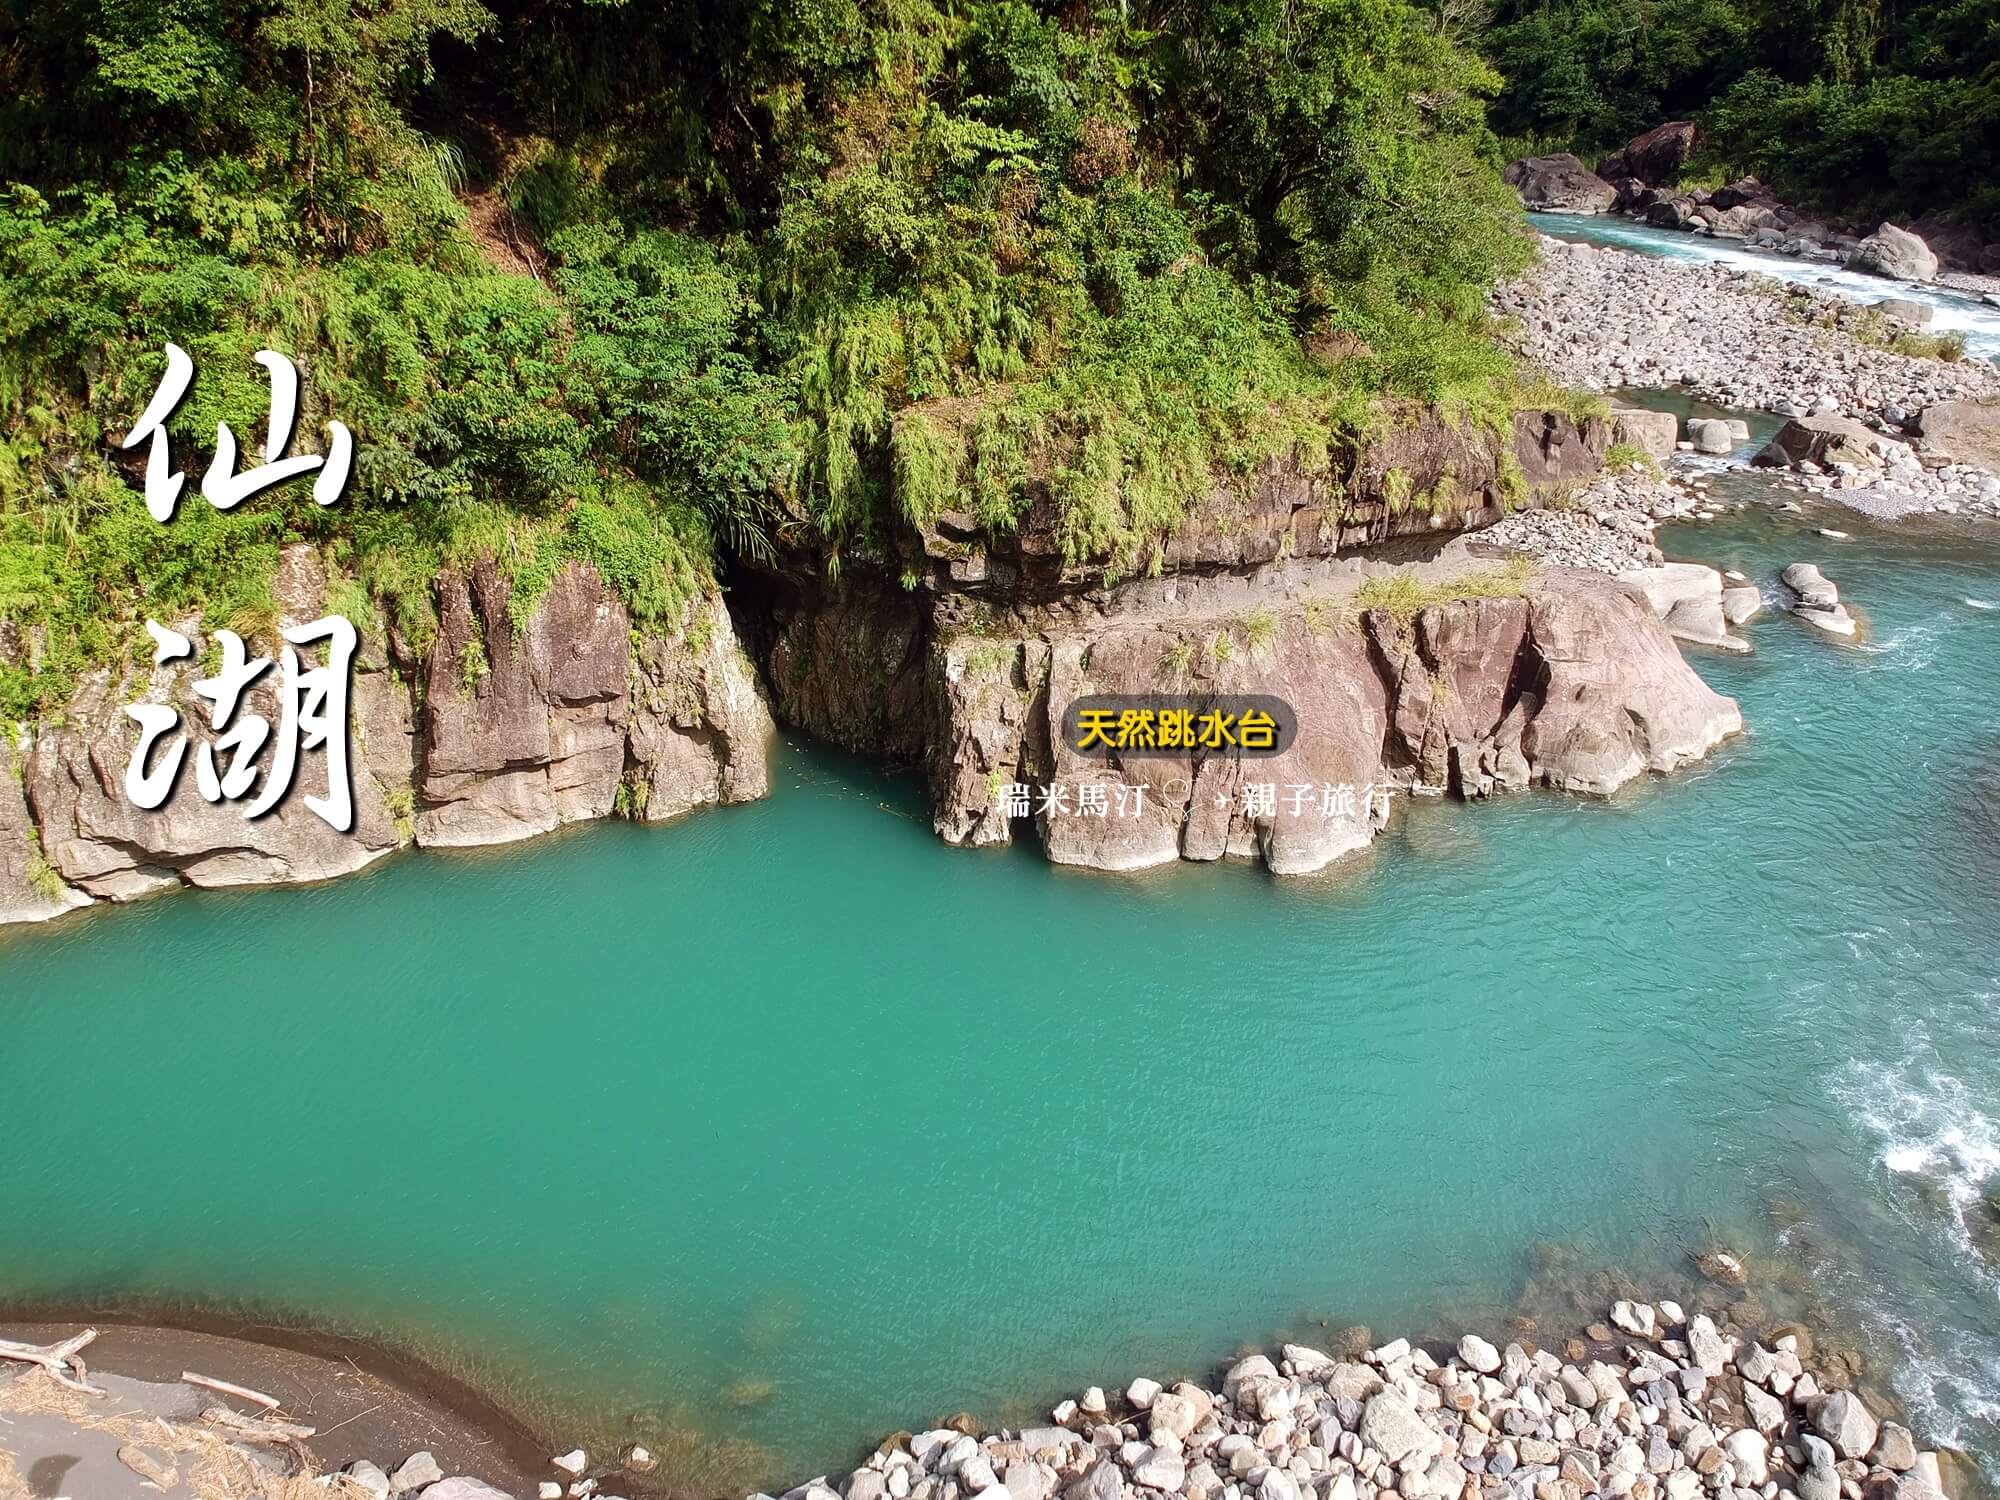 瑞米馬汀 仙湖露營區 夢幻的tiffany Blue 來玩跳水吧 新竹五峰 117 瑞米馬汀 親子旅行